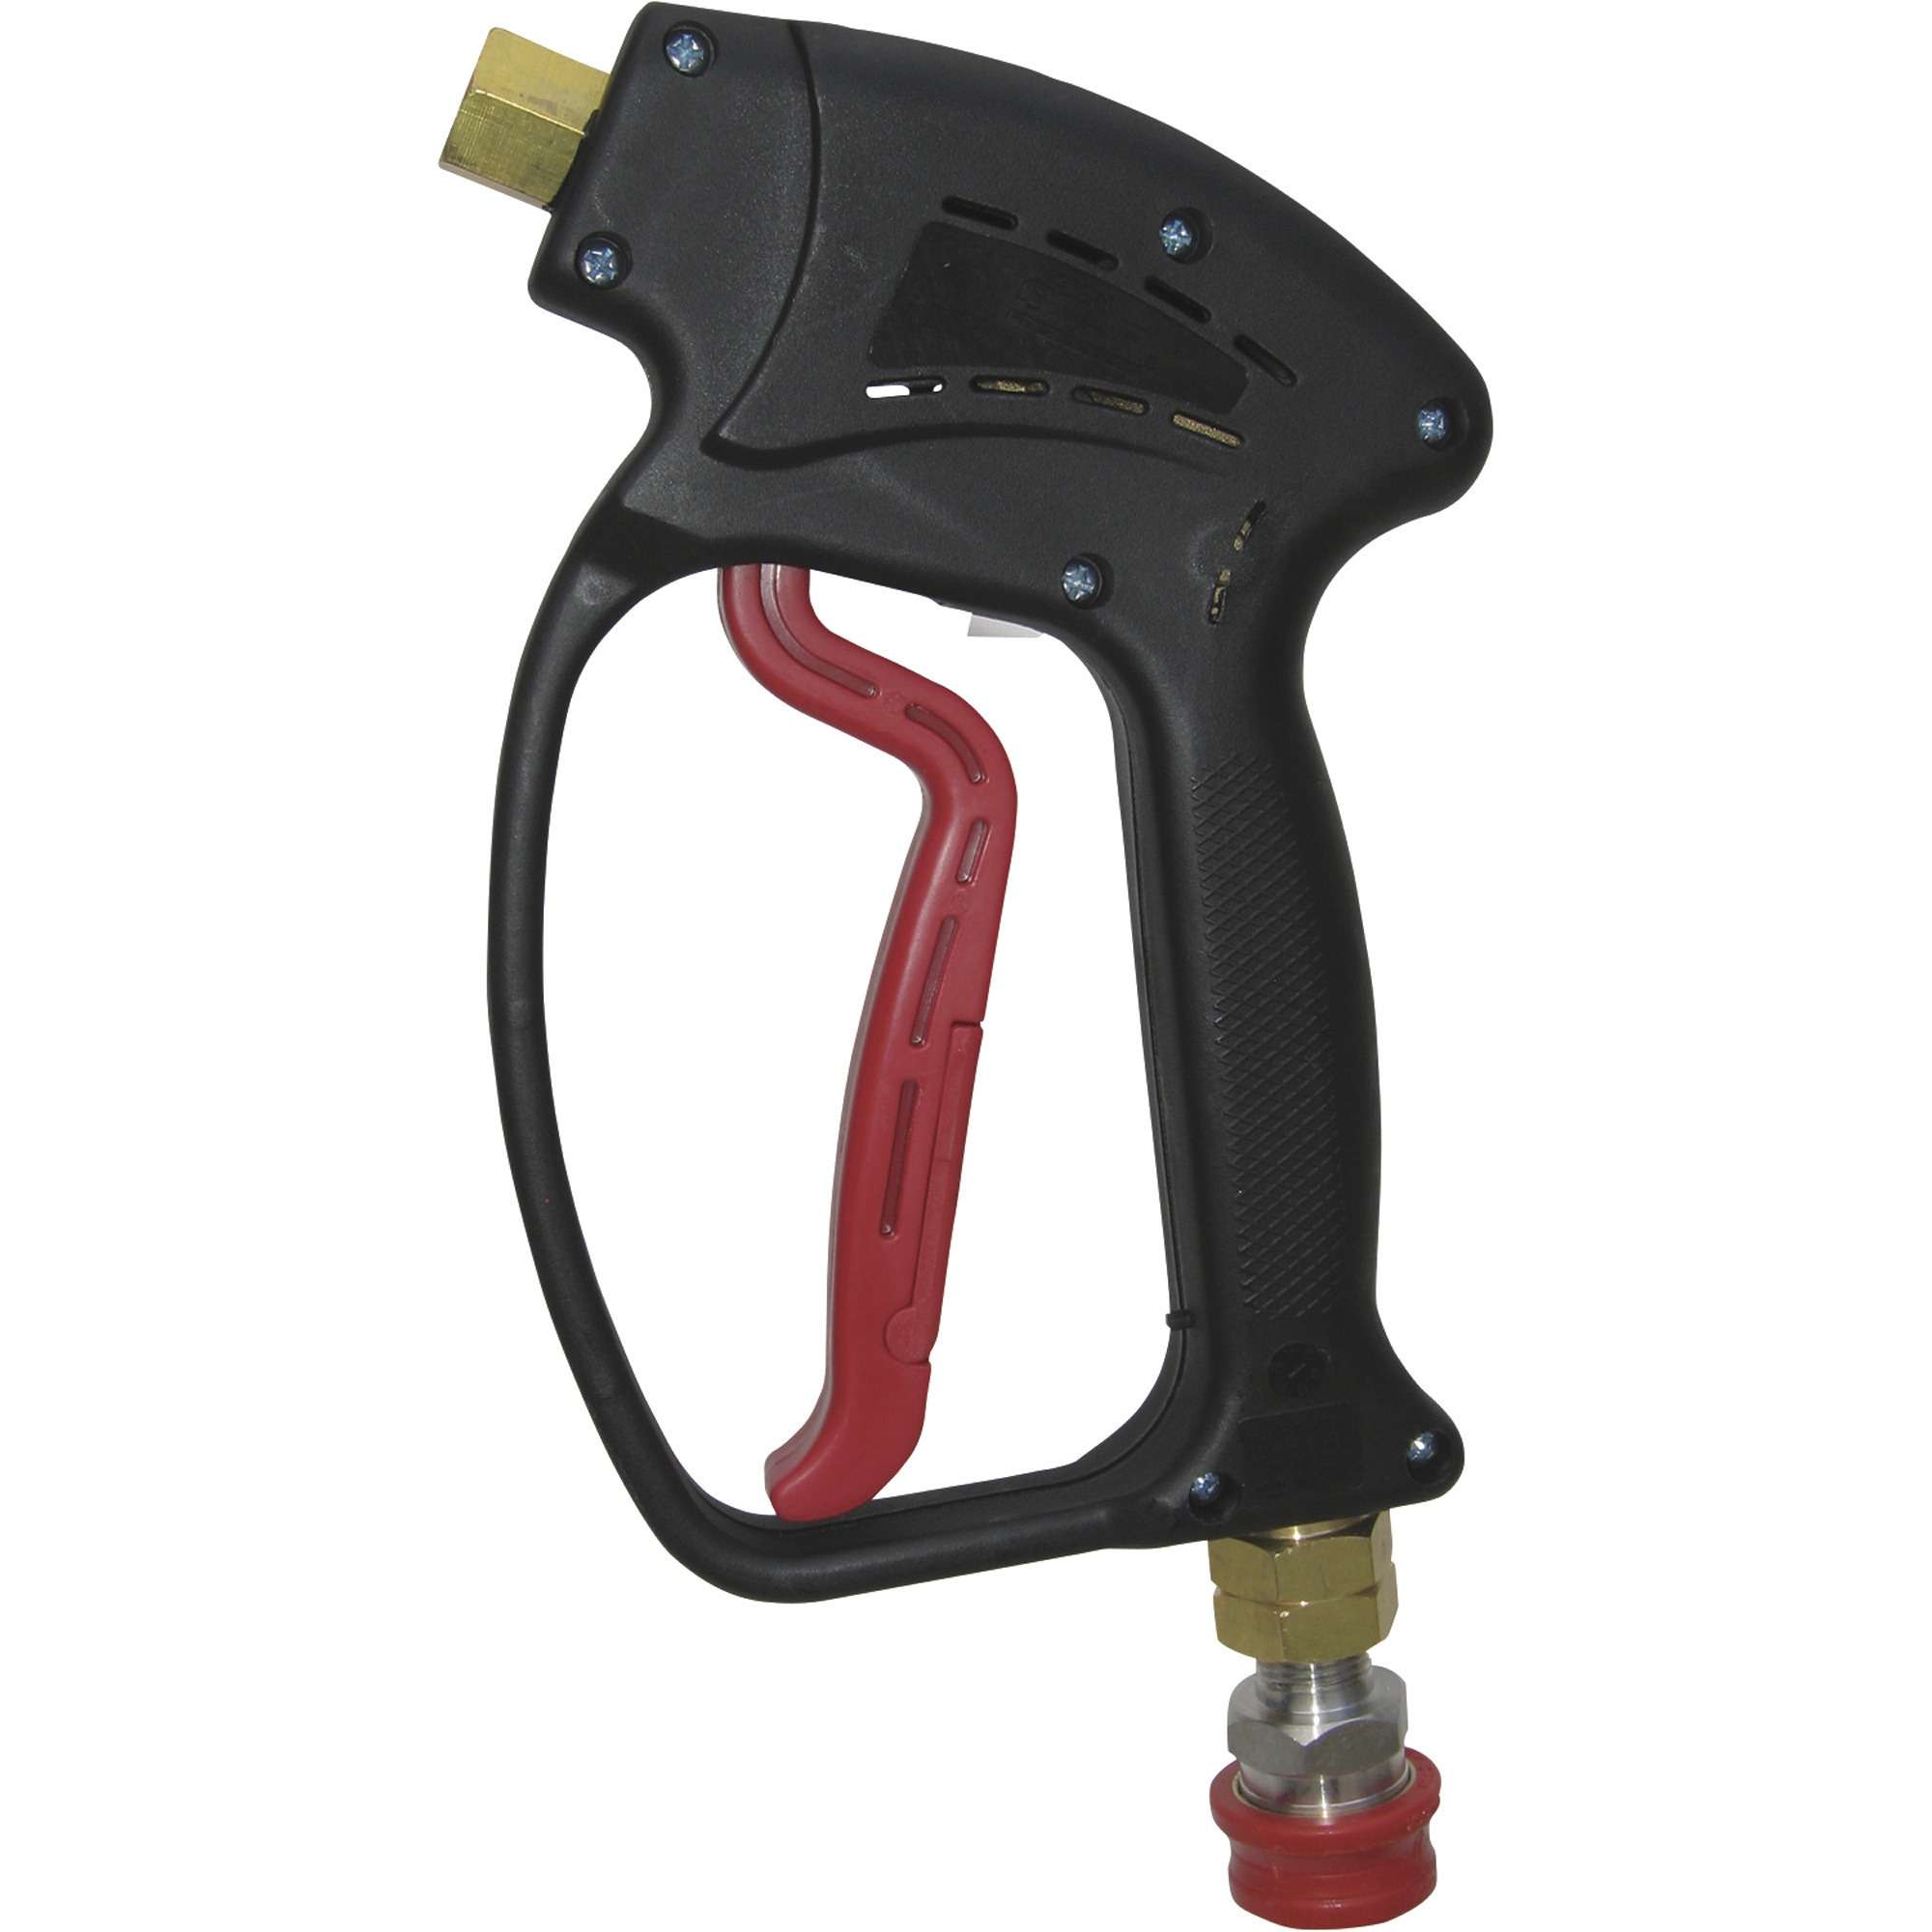 NorthStar Hot Water Pressure Washer Trigger Spray Gun â 5000 PSI, 10.5 GPM, ModelDGR5010P